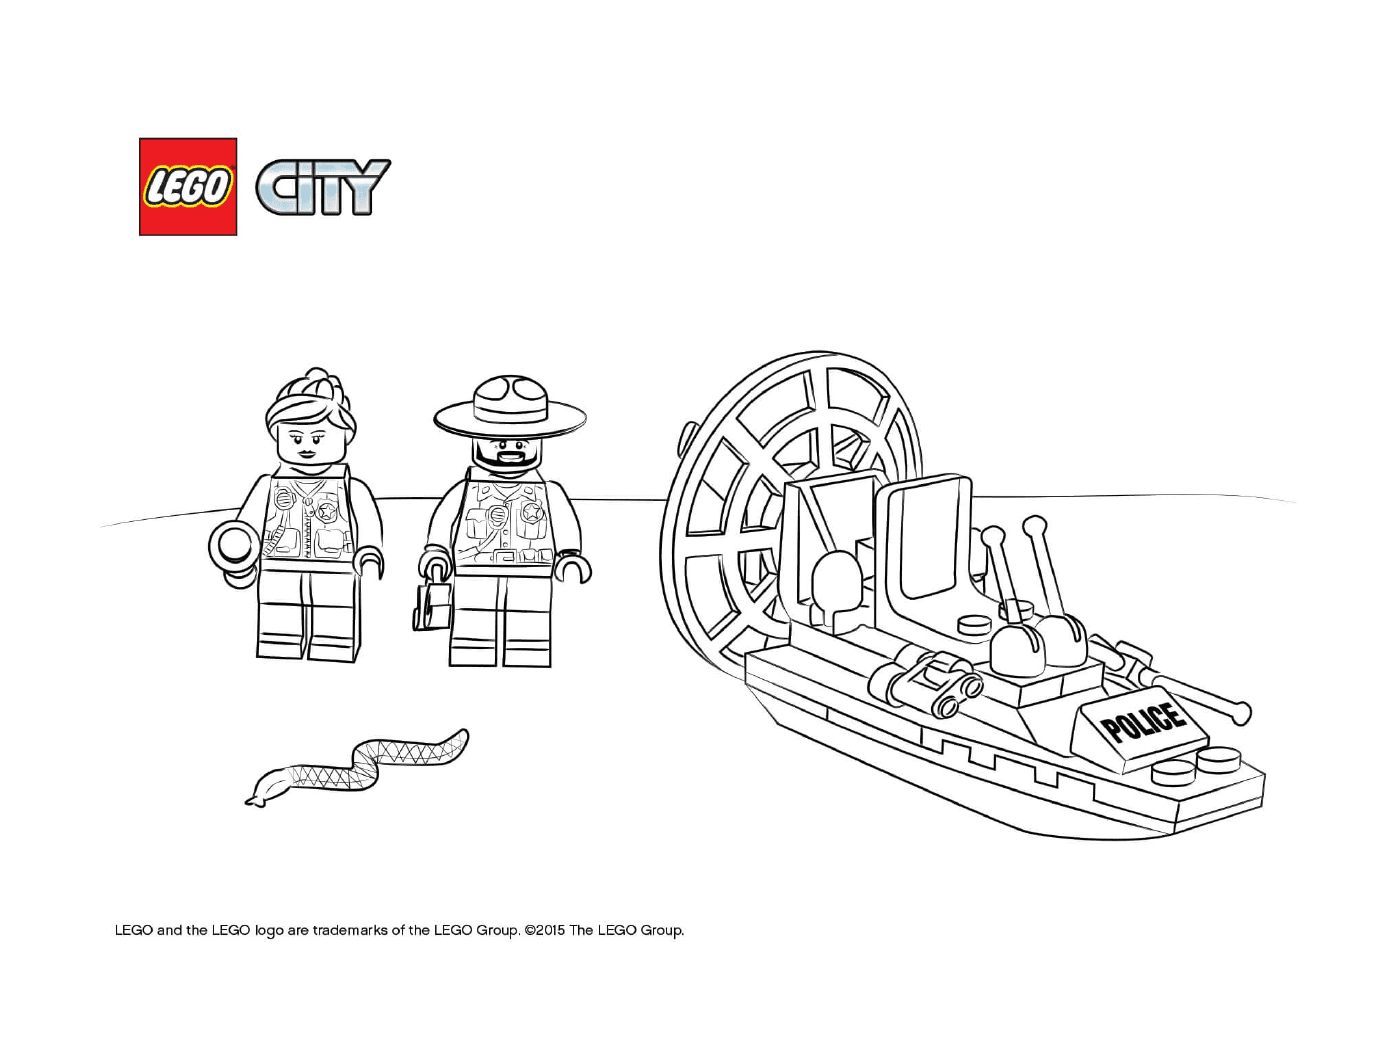  Juego de inicio de la policía de pantano de Lego City 